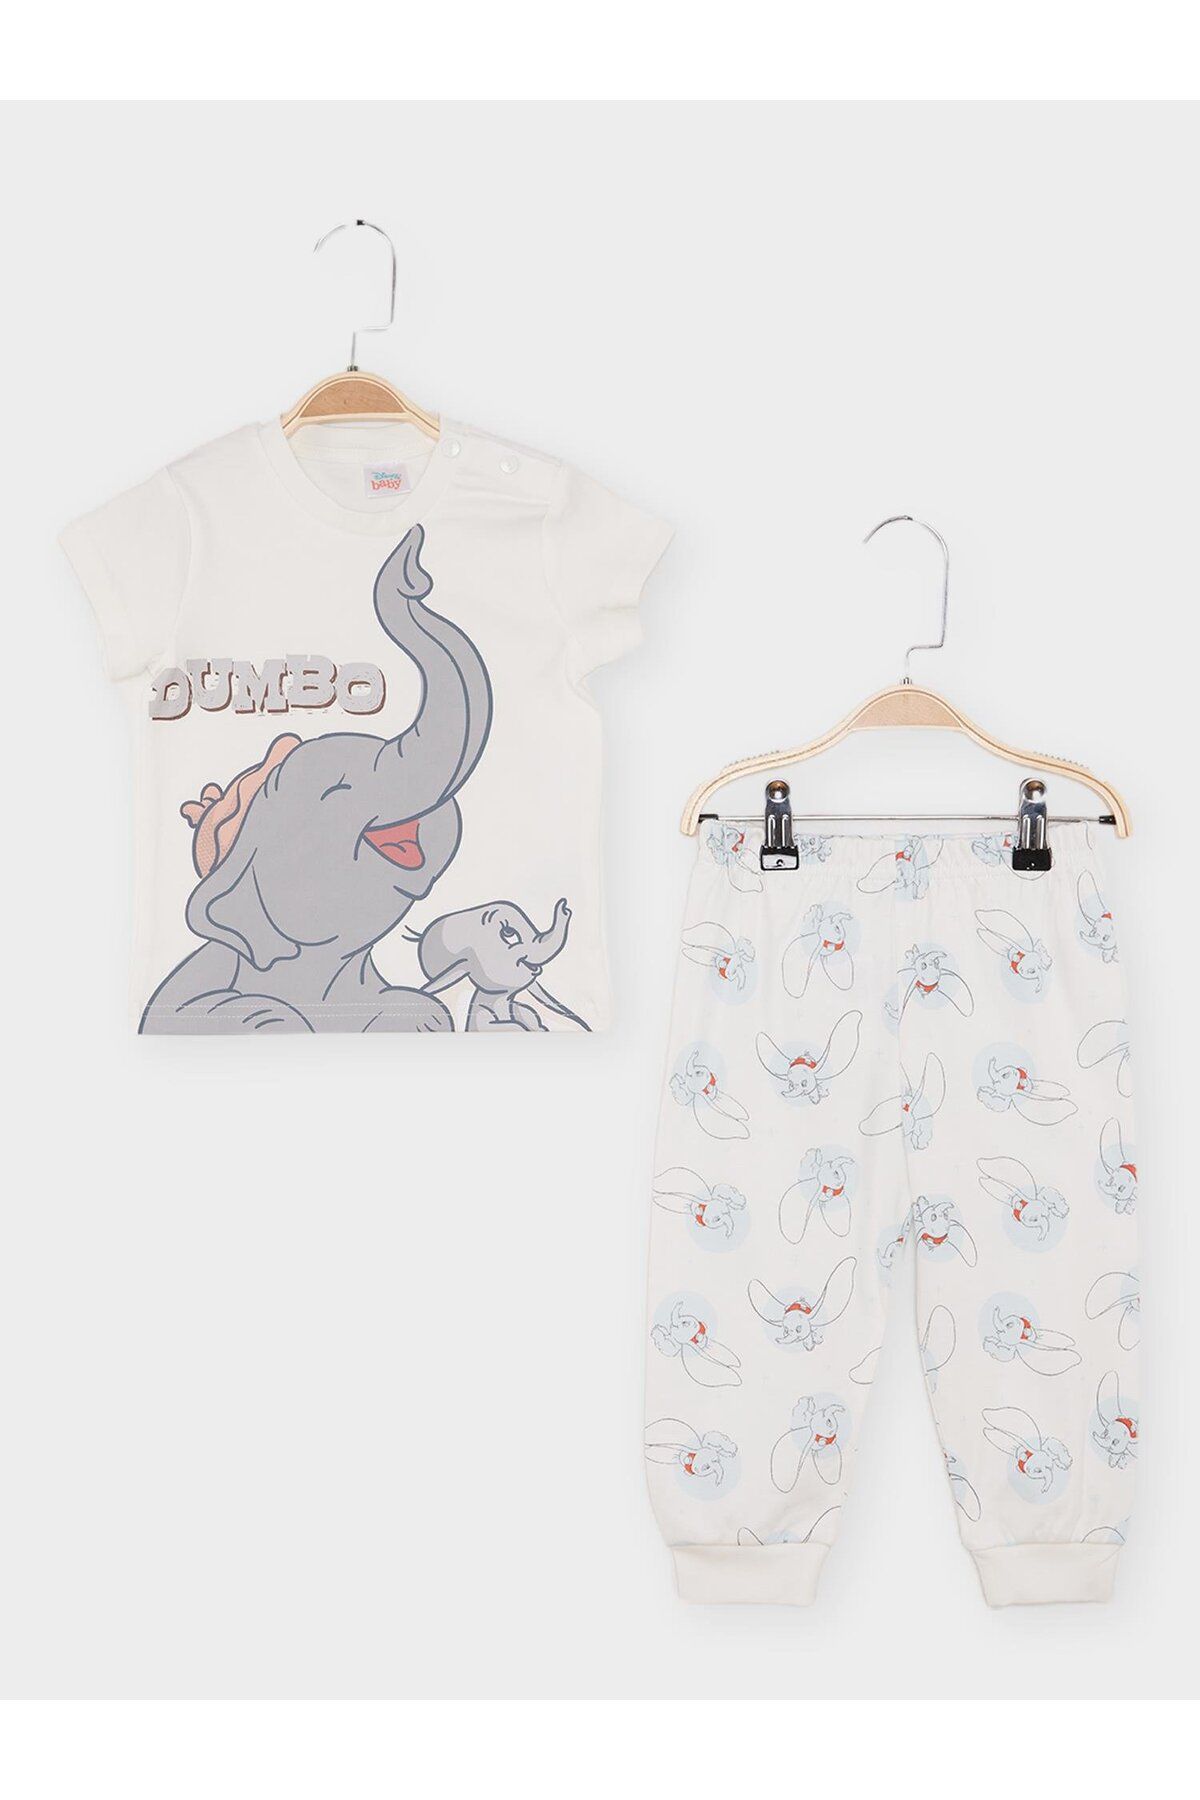 DİSNEY Dumbo Lisanslı Erkek Bebek Pijama Takımı 21832